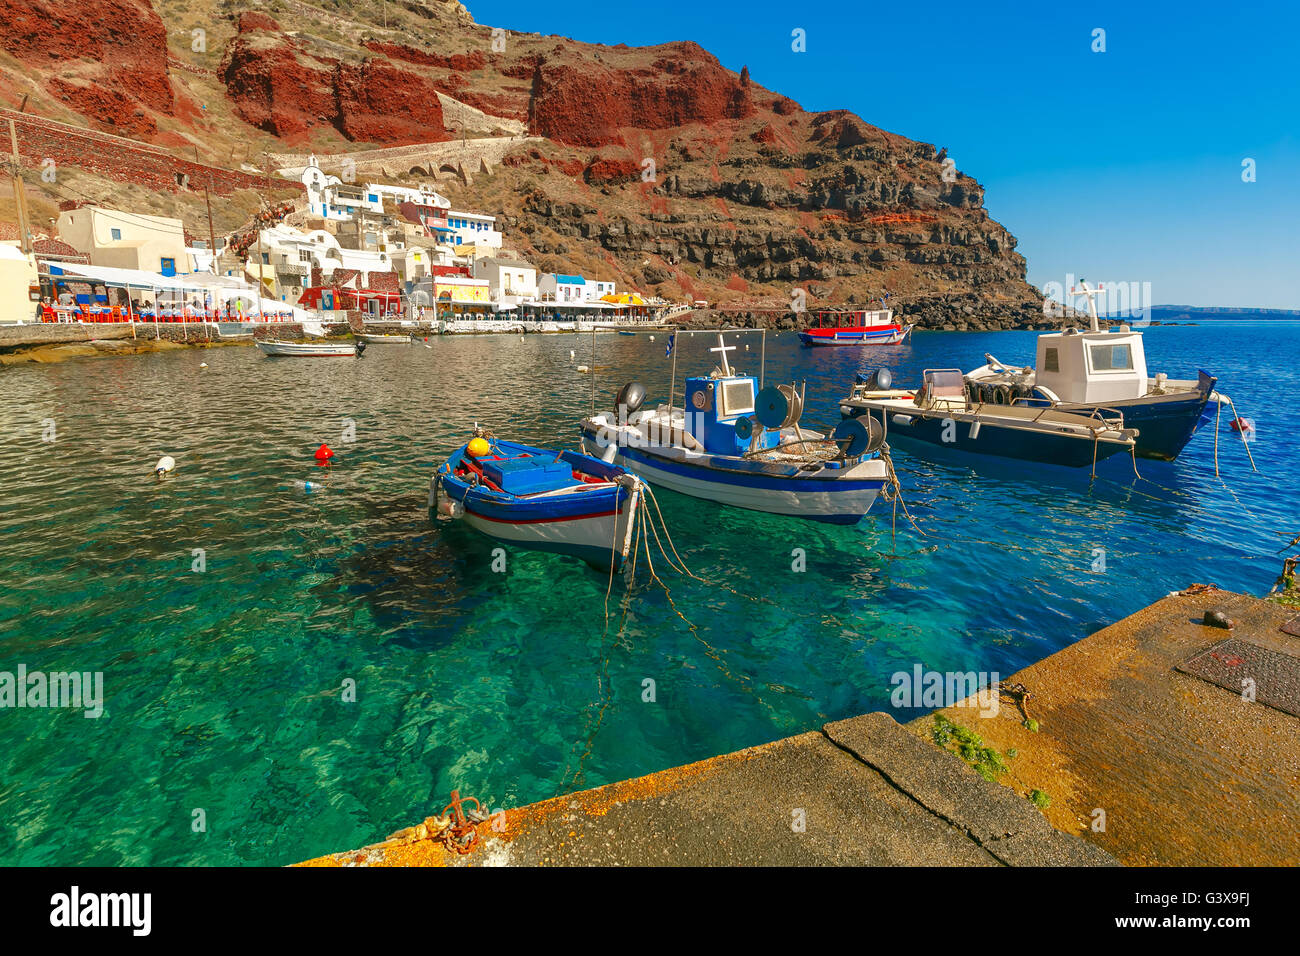 Port Amoudi of Oia or Ia, Santorini, Greece Stock Photo - Alamy